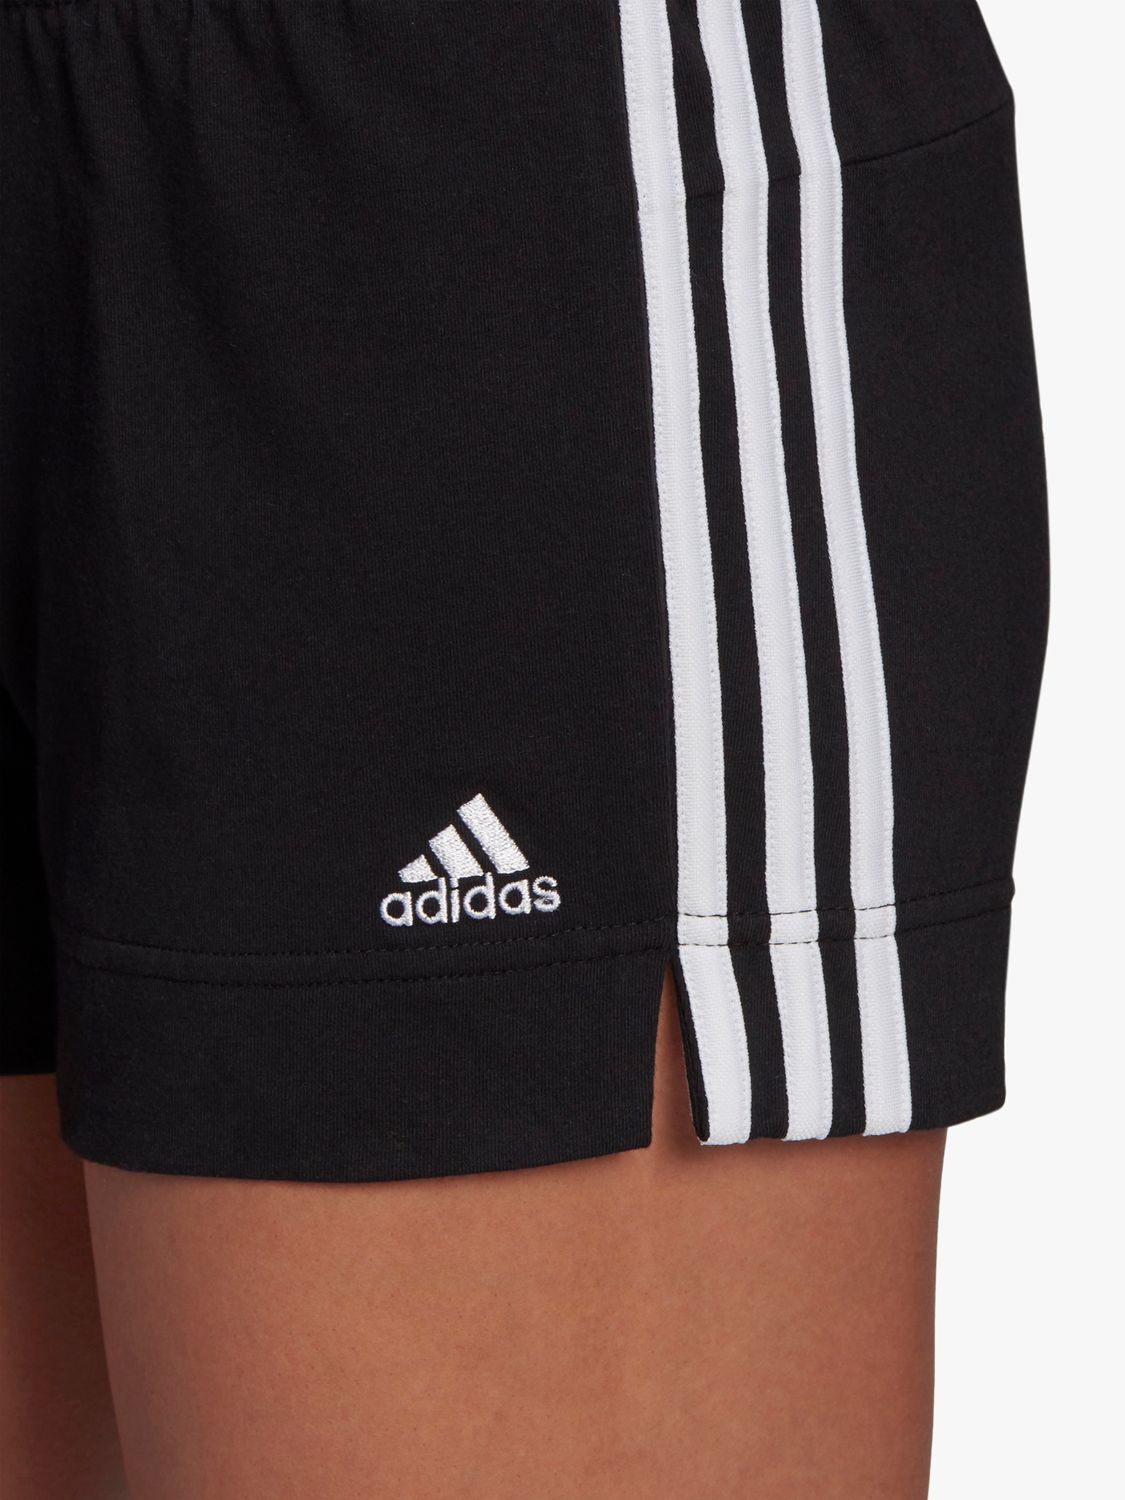 adidas Essentials Slim 3-Stripes Gym Shorts, Black/White, Black/White ...